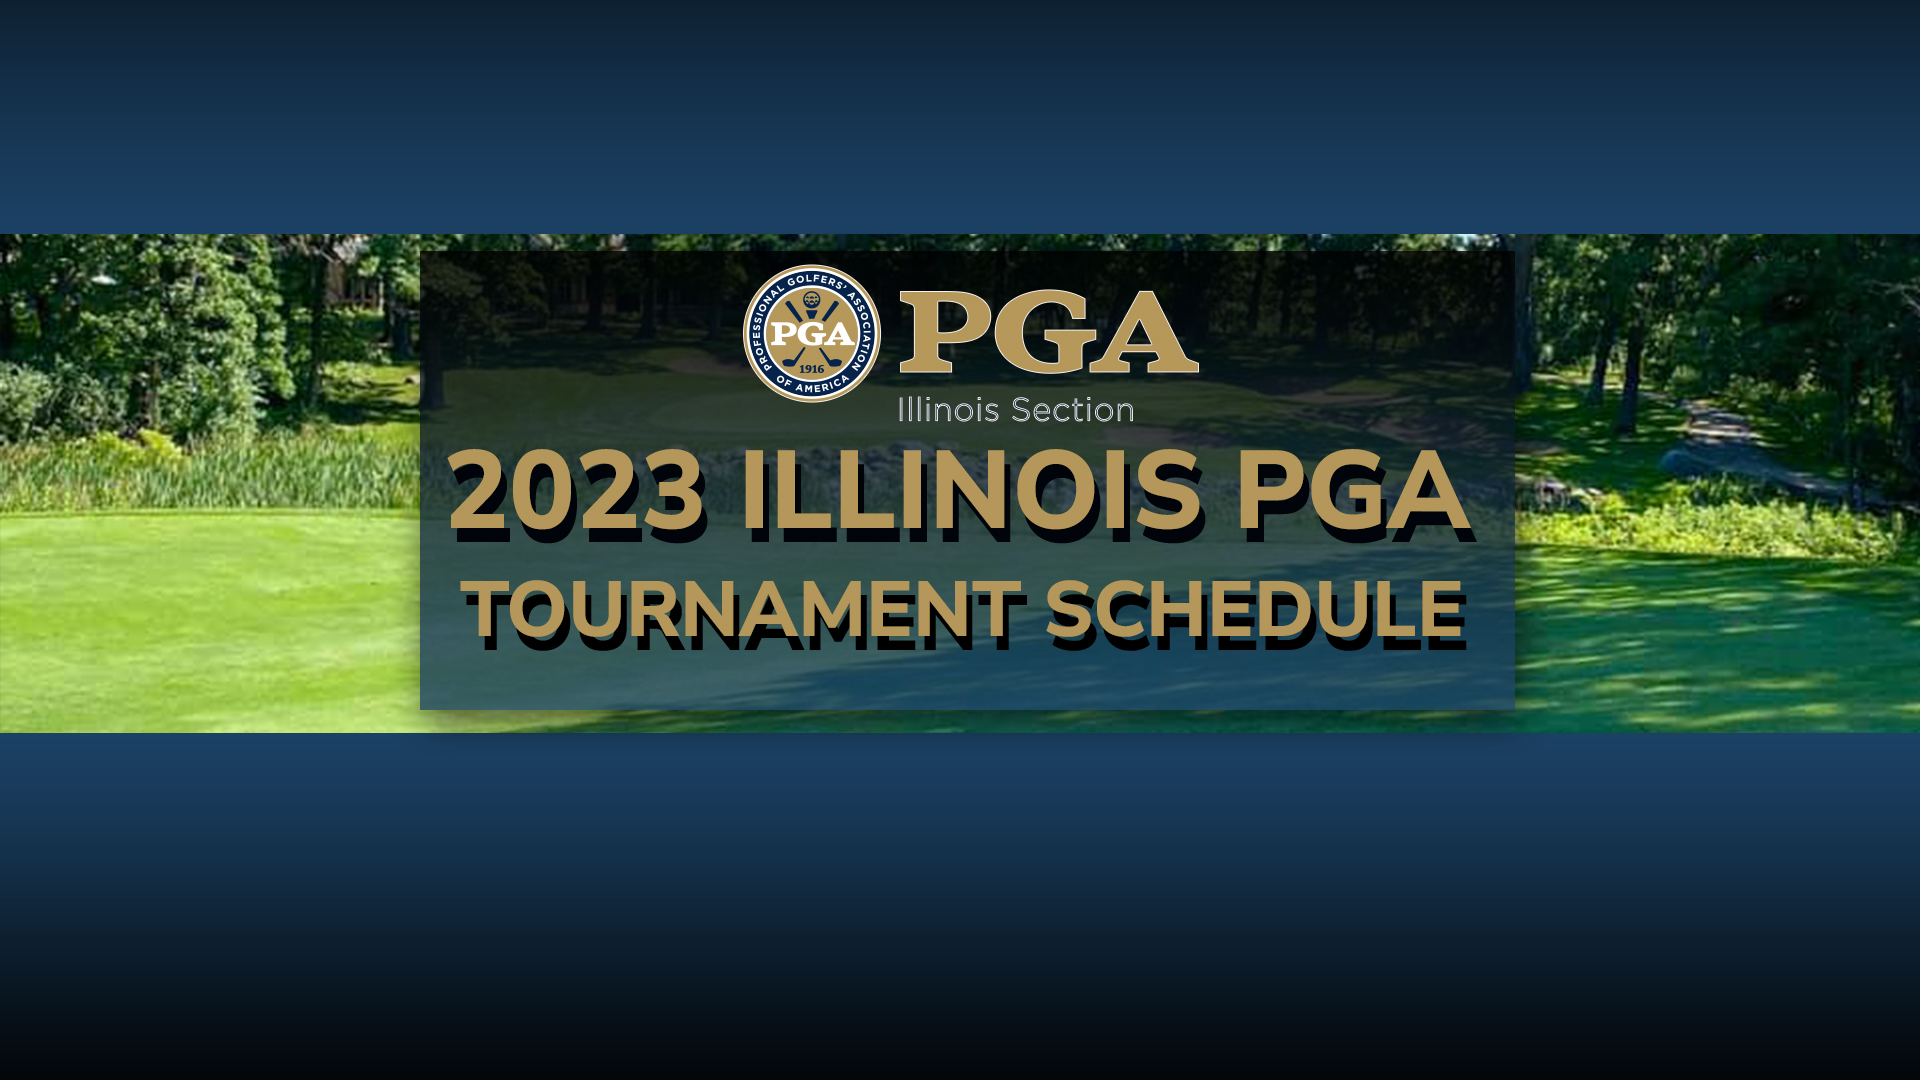 Illinois PGA Announces 2023 Tournament Schedule Illinois PGA Section